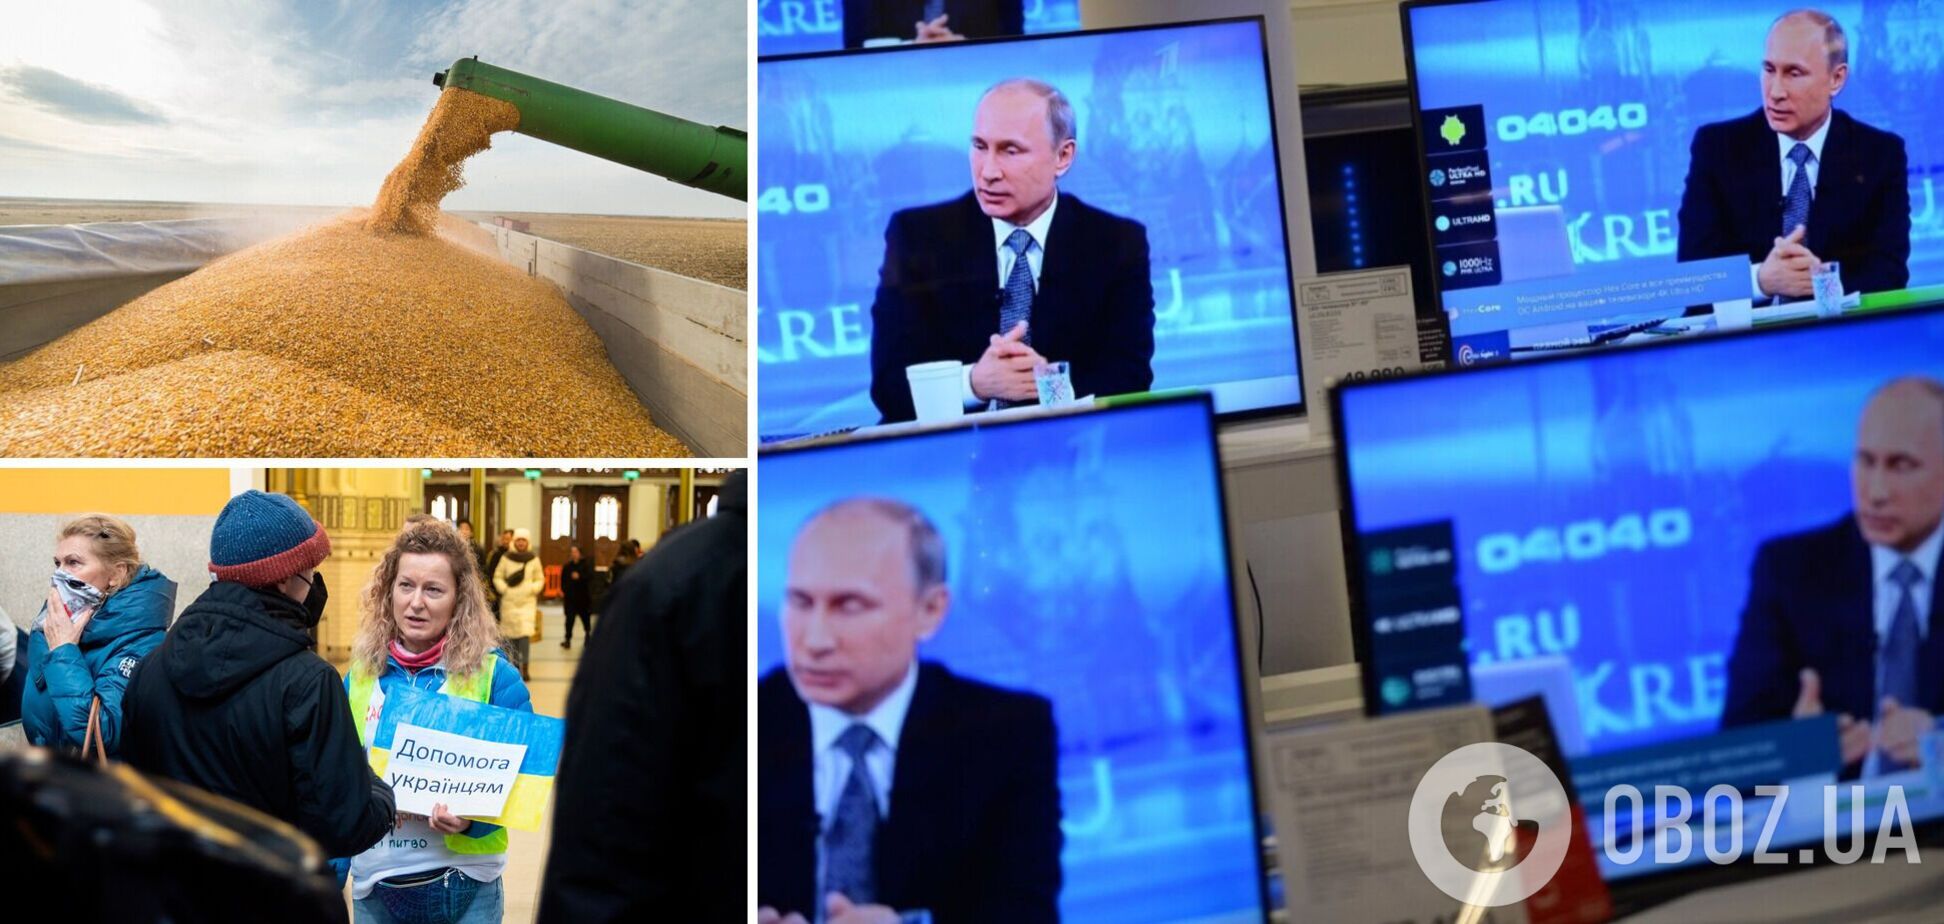 Обережно, працює пропаганда! Як Кремль намагається посварити Україну та Захід